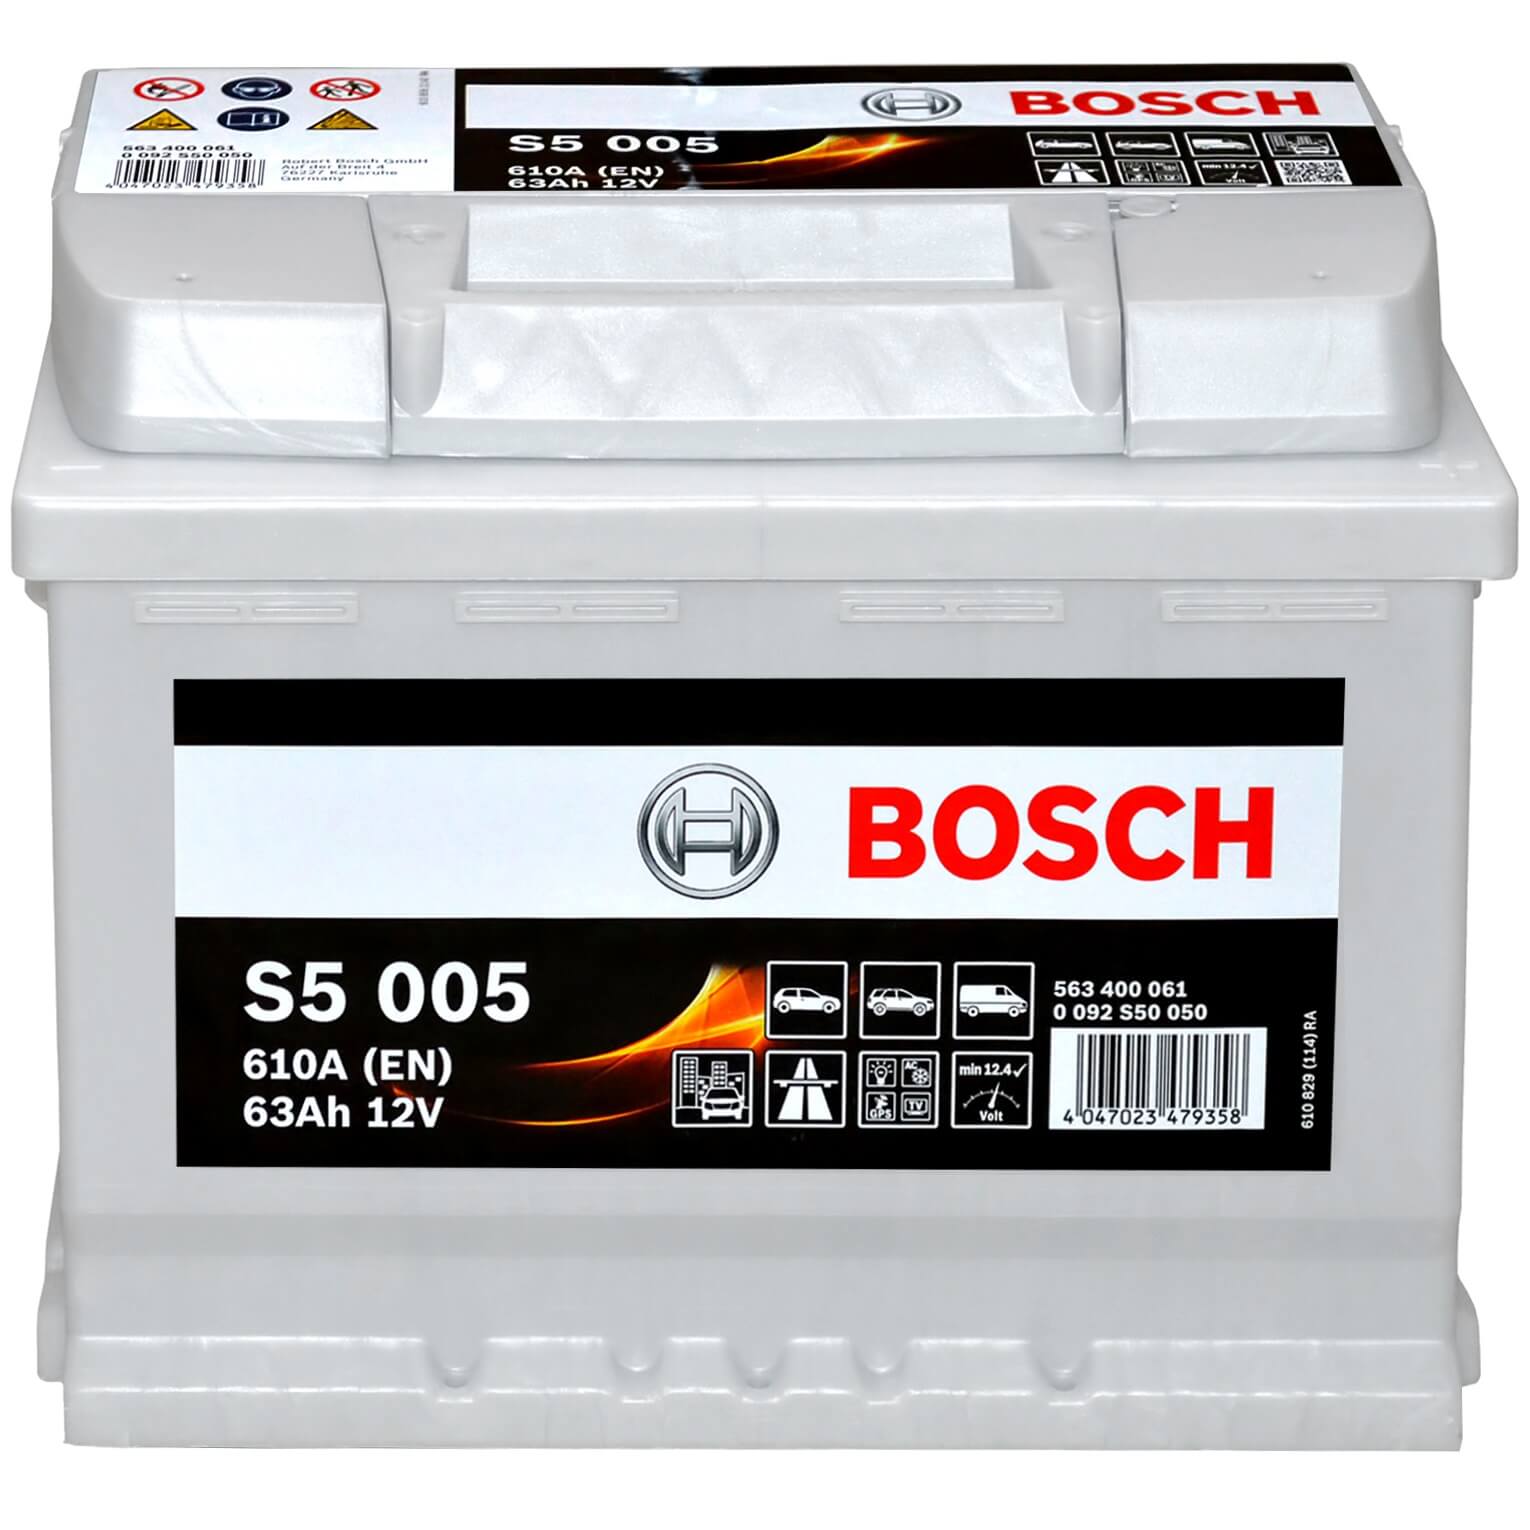 Bosch S5005 12V 63Ah 610A/EN